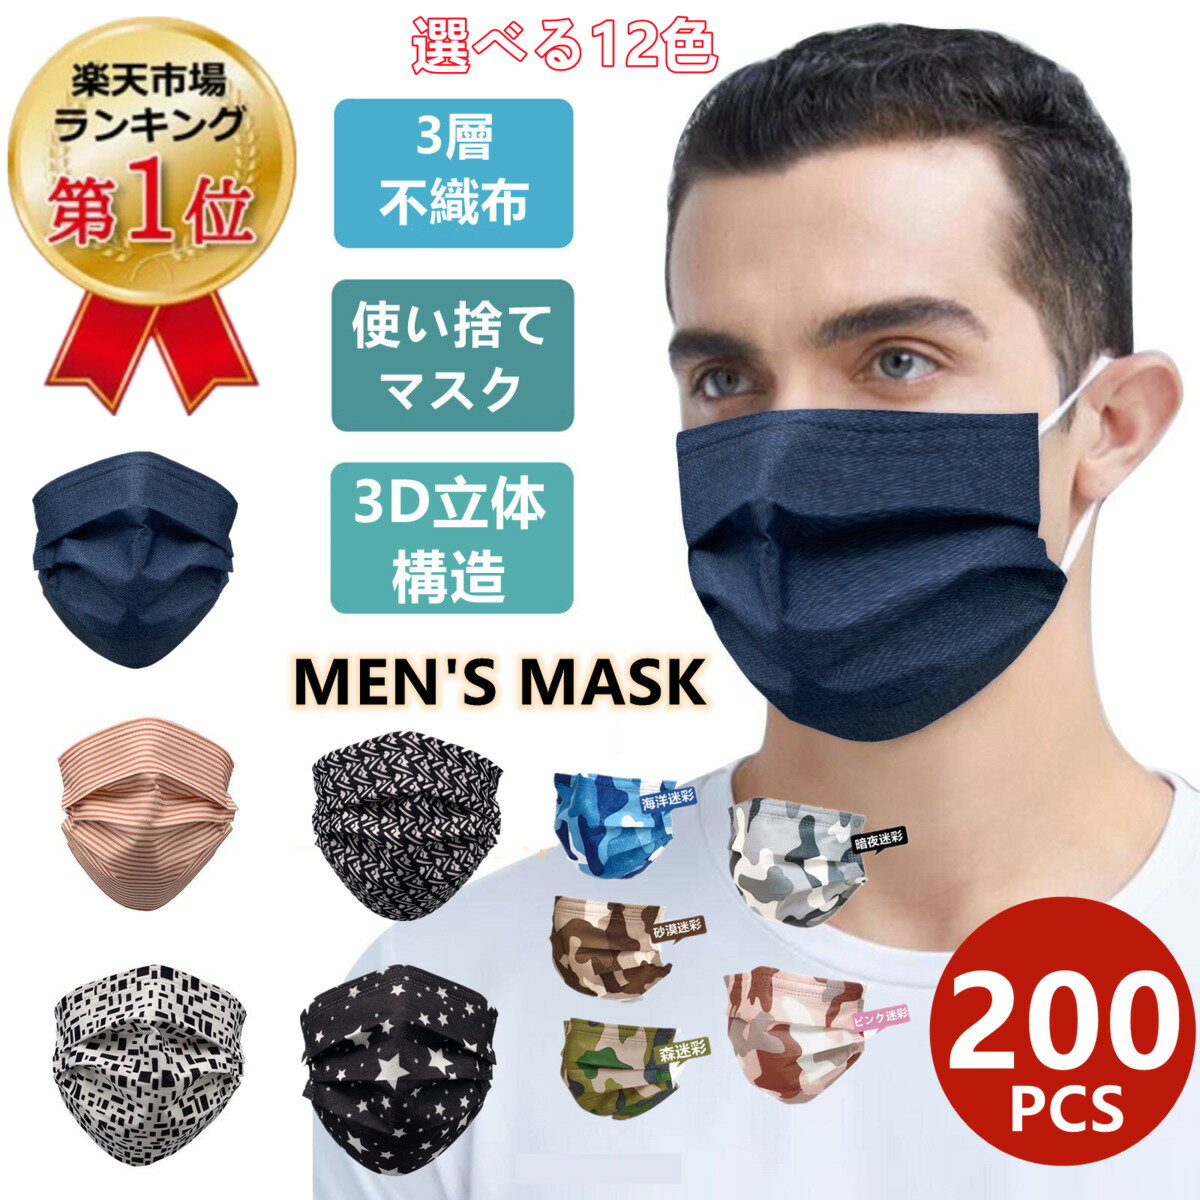 2点セットで500円クーポン 迷彩マスク マスク 200枚 送料無料 マスク 大人用 使い捨てマスク 男性用 メンズ ファッションマスク カッコイイ 不織布マスク 不織布3層式 mask 通勤 高密度フィル…